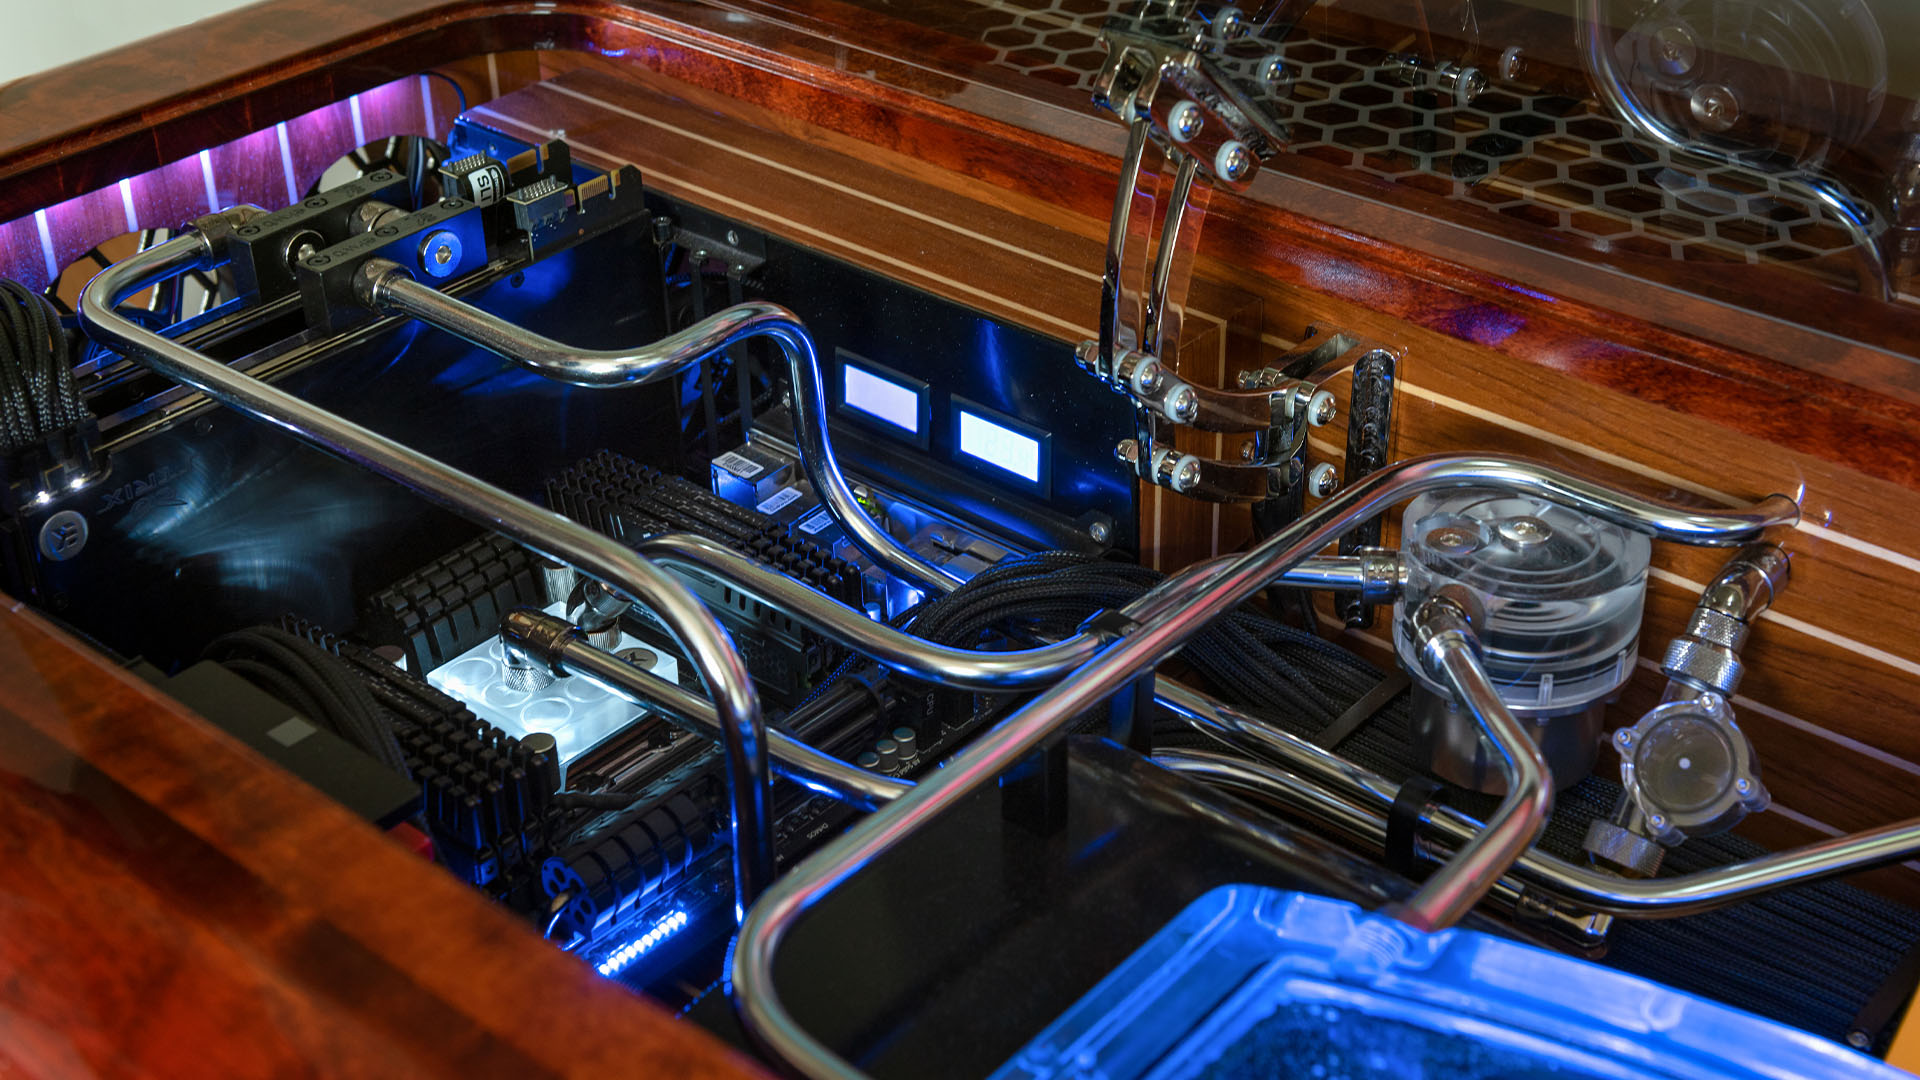 The custom waterloop inside a wooden desk PC